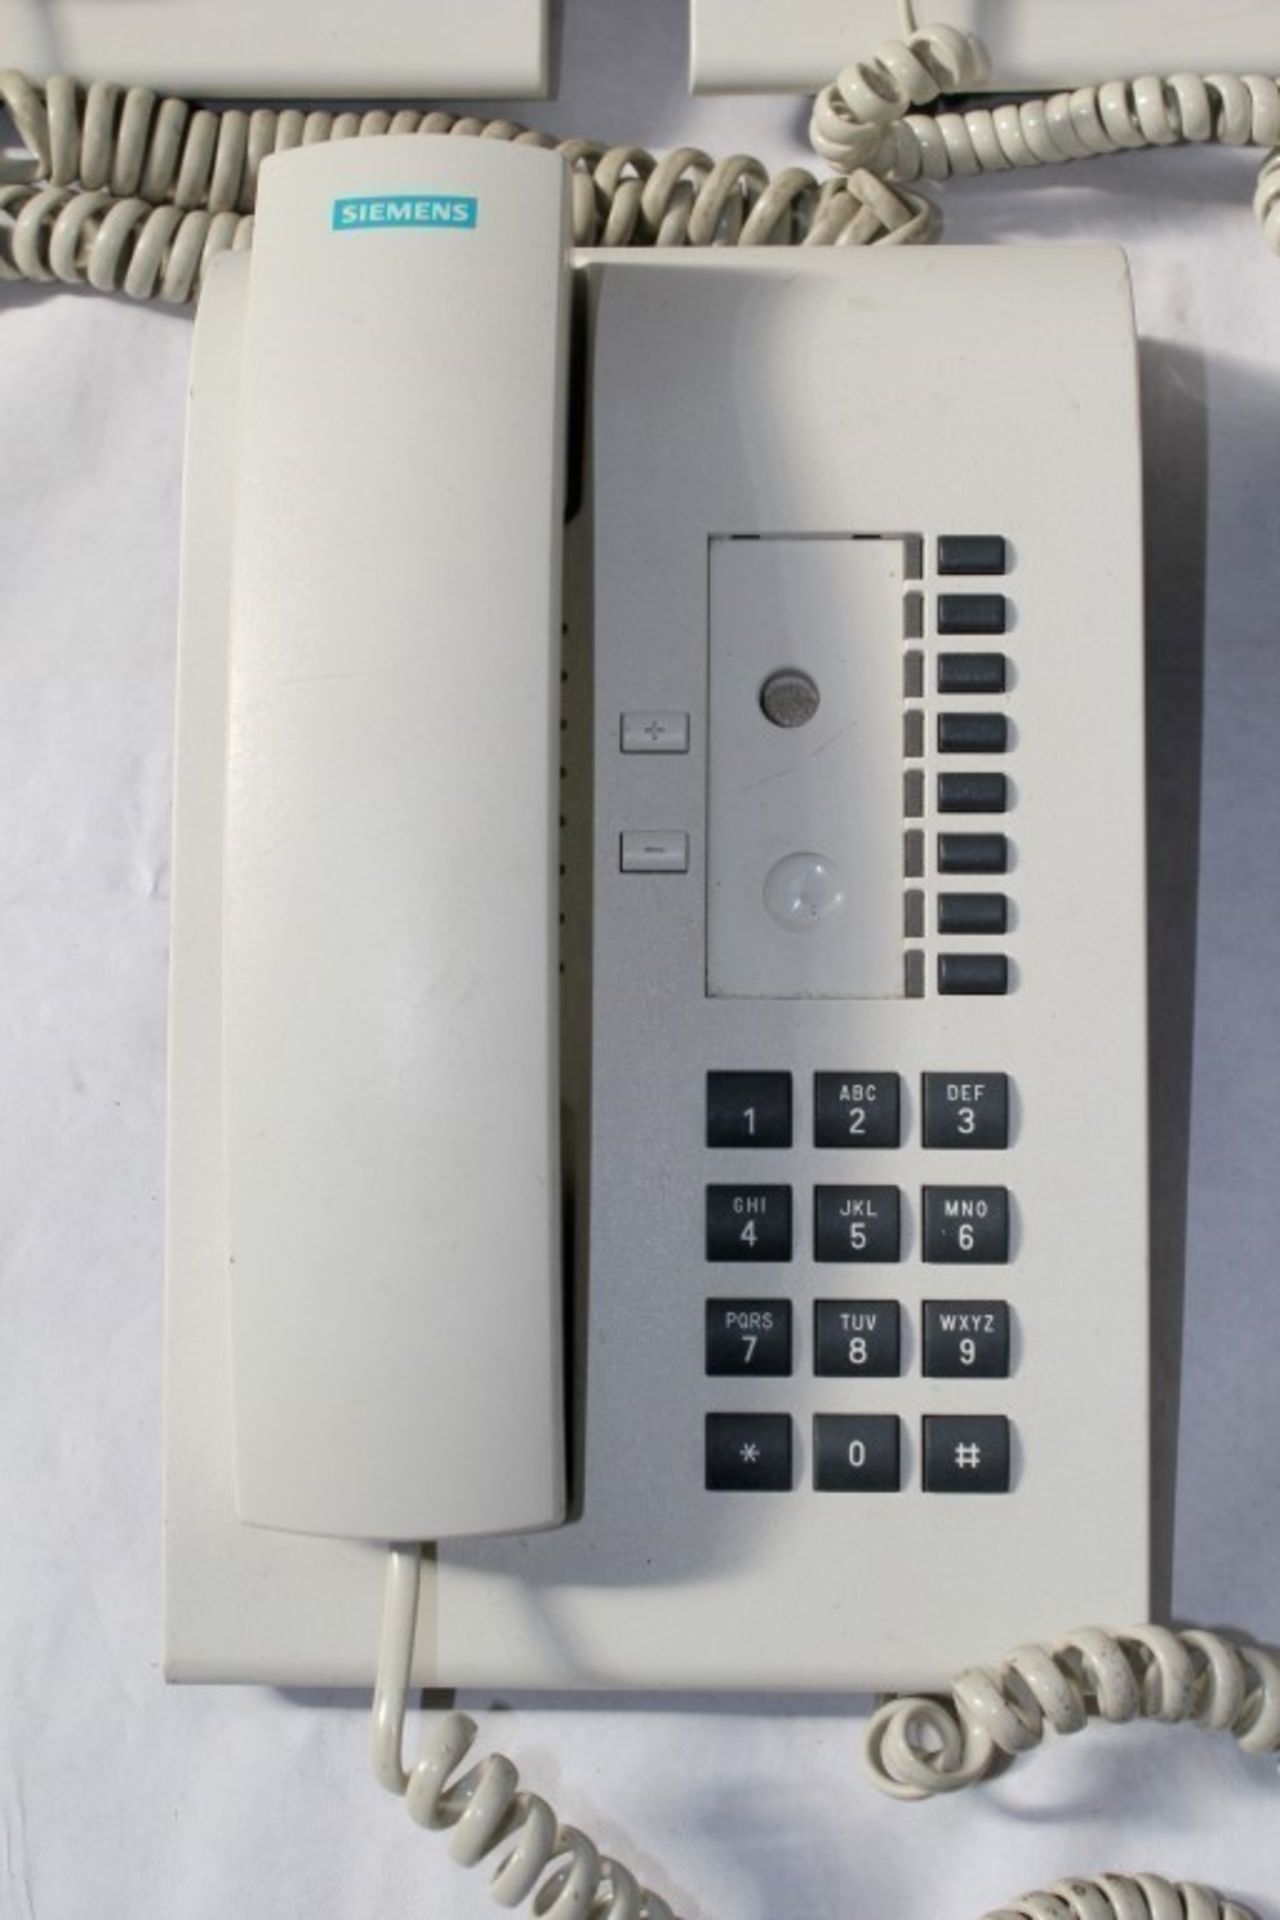 5 x Siemens Office Telephones in White - Models: 4 x Optiset E Basic & 1 x Optiset Entry Phone - All - Image 3 of 3